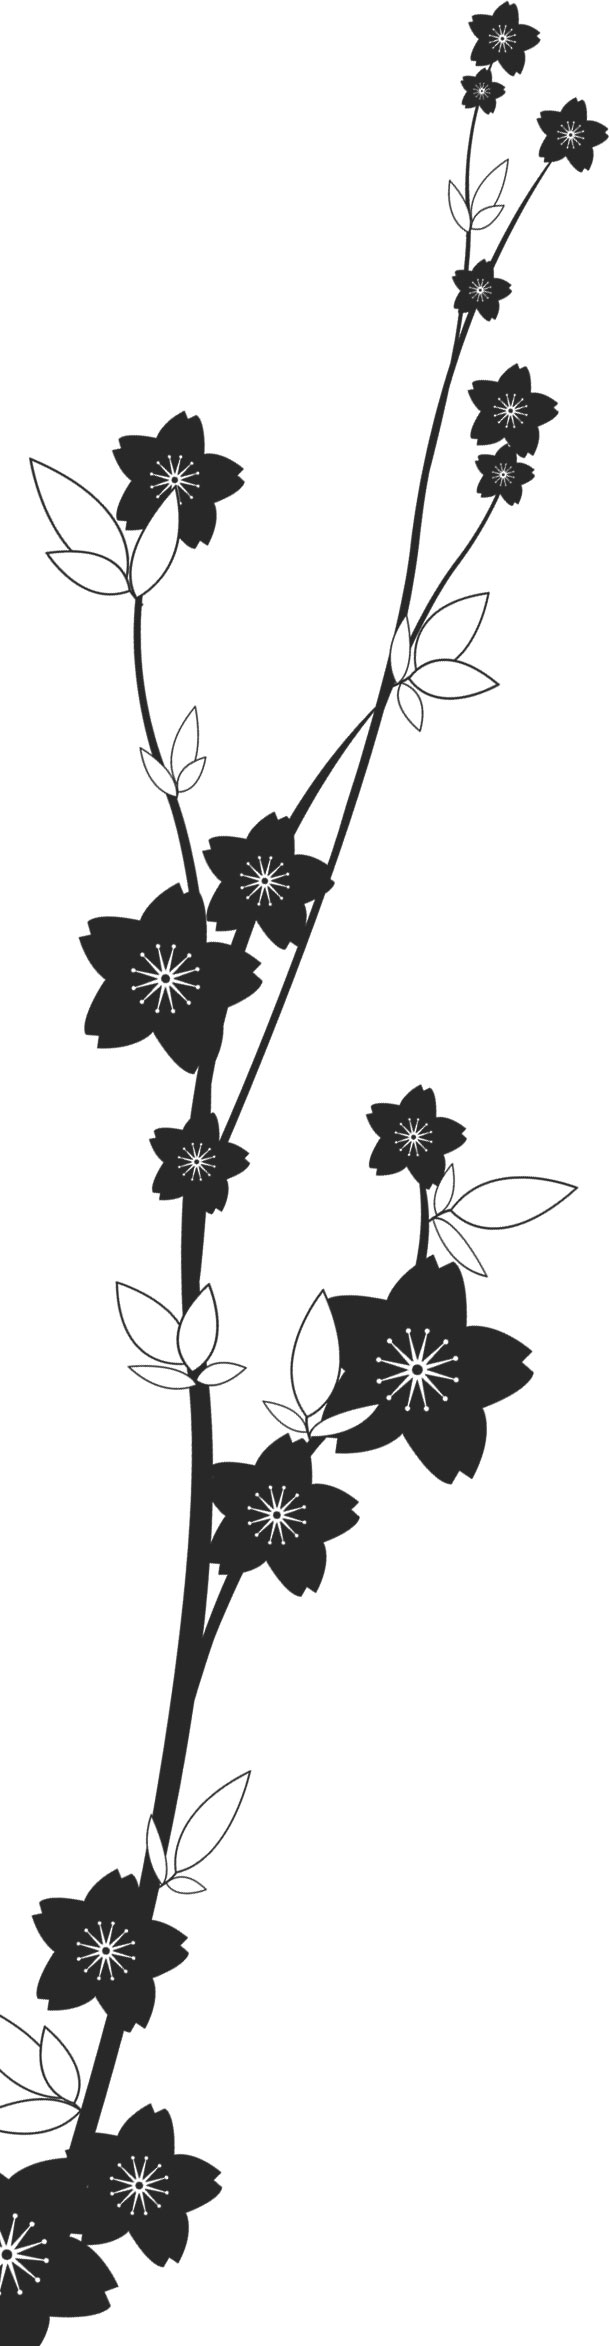 最も人気のある 桜 イラスト 白黒 最高の壁紙のアイデアcahd